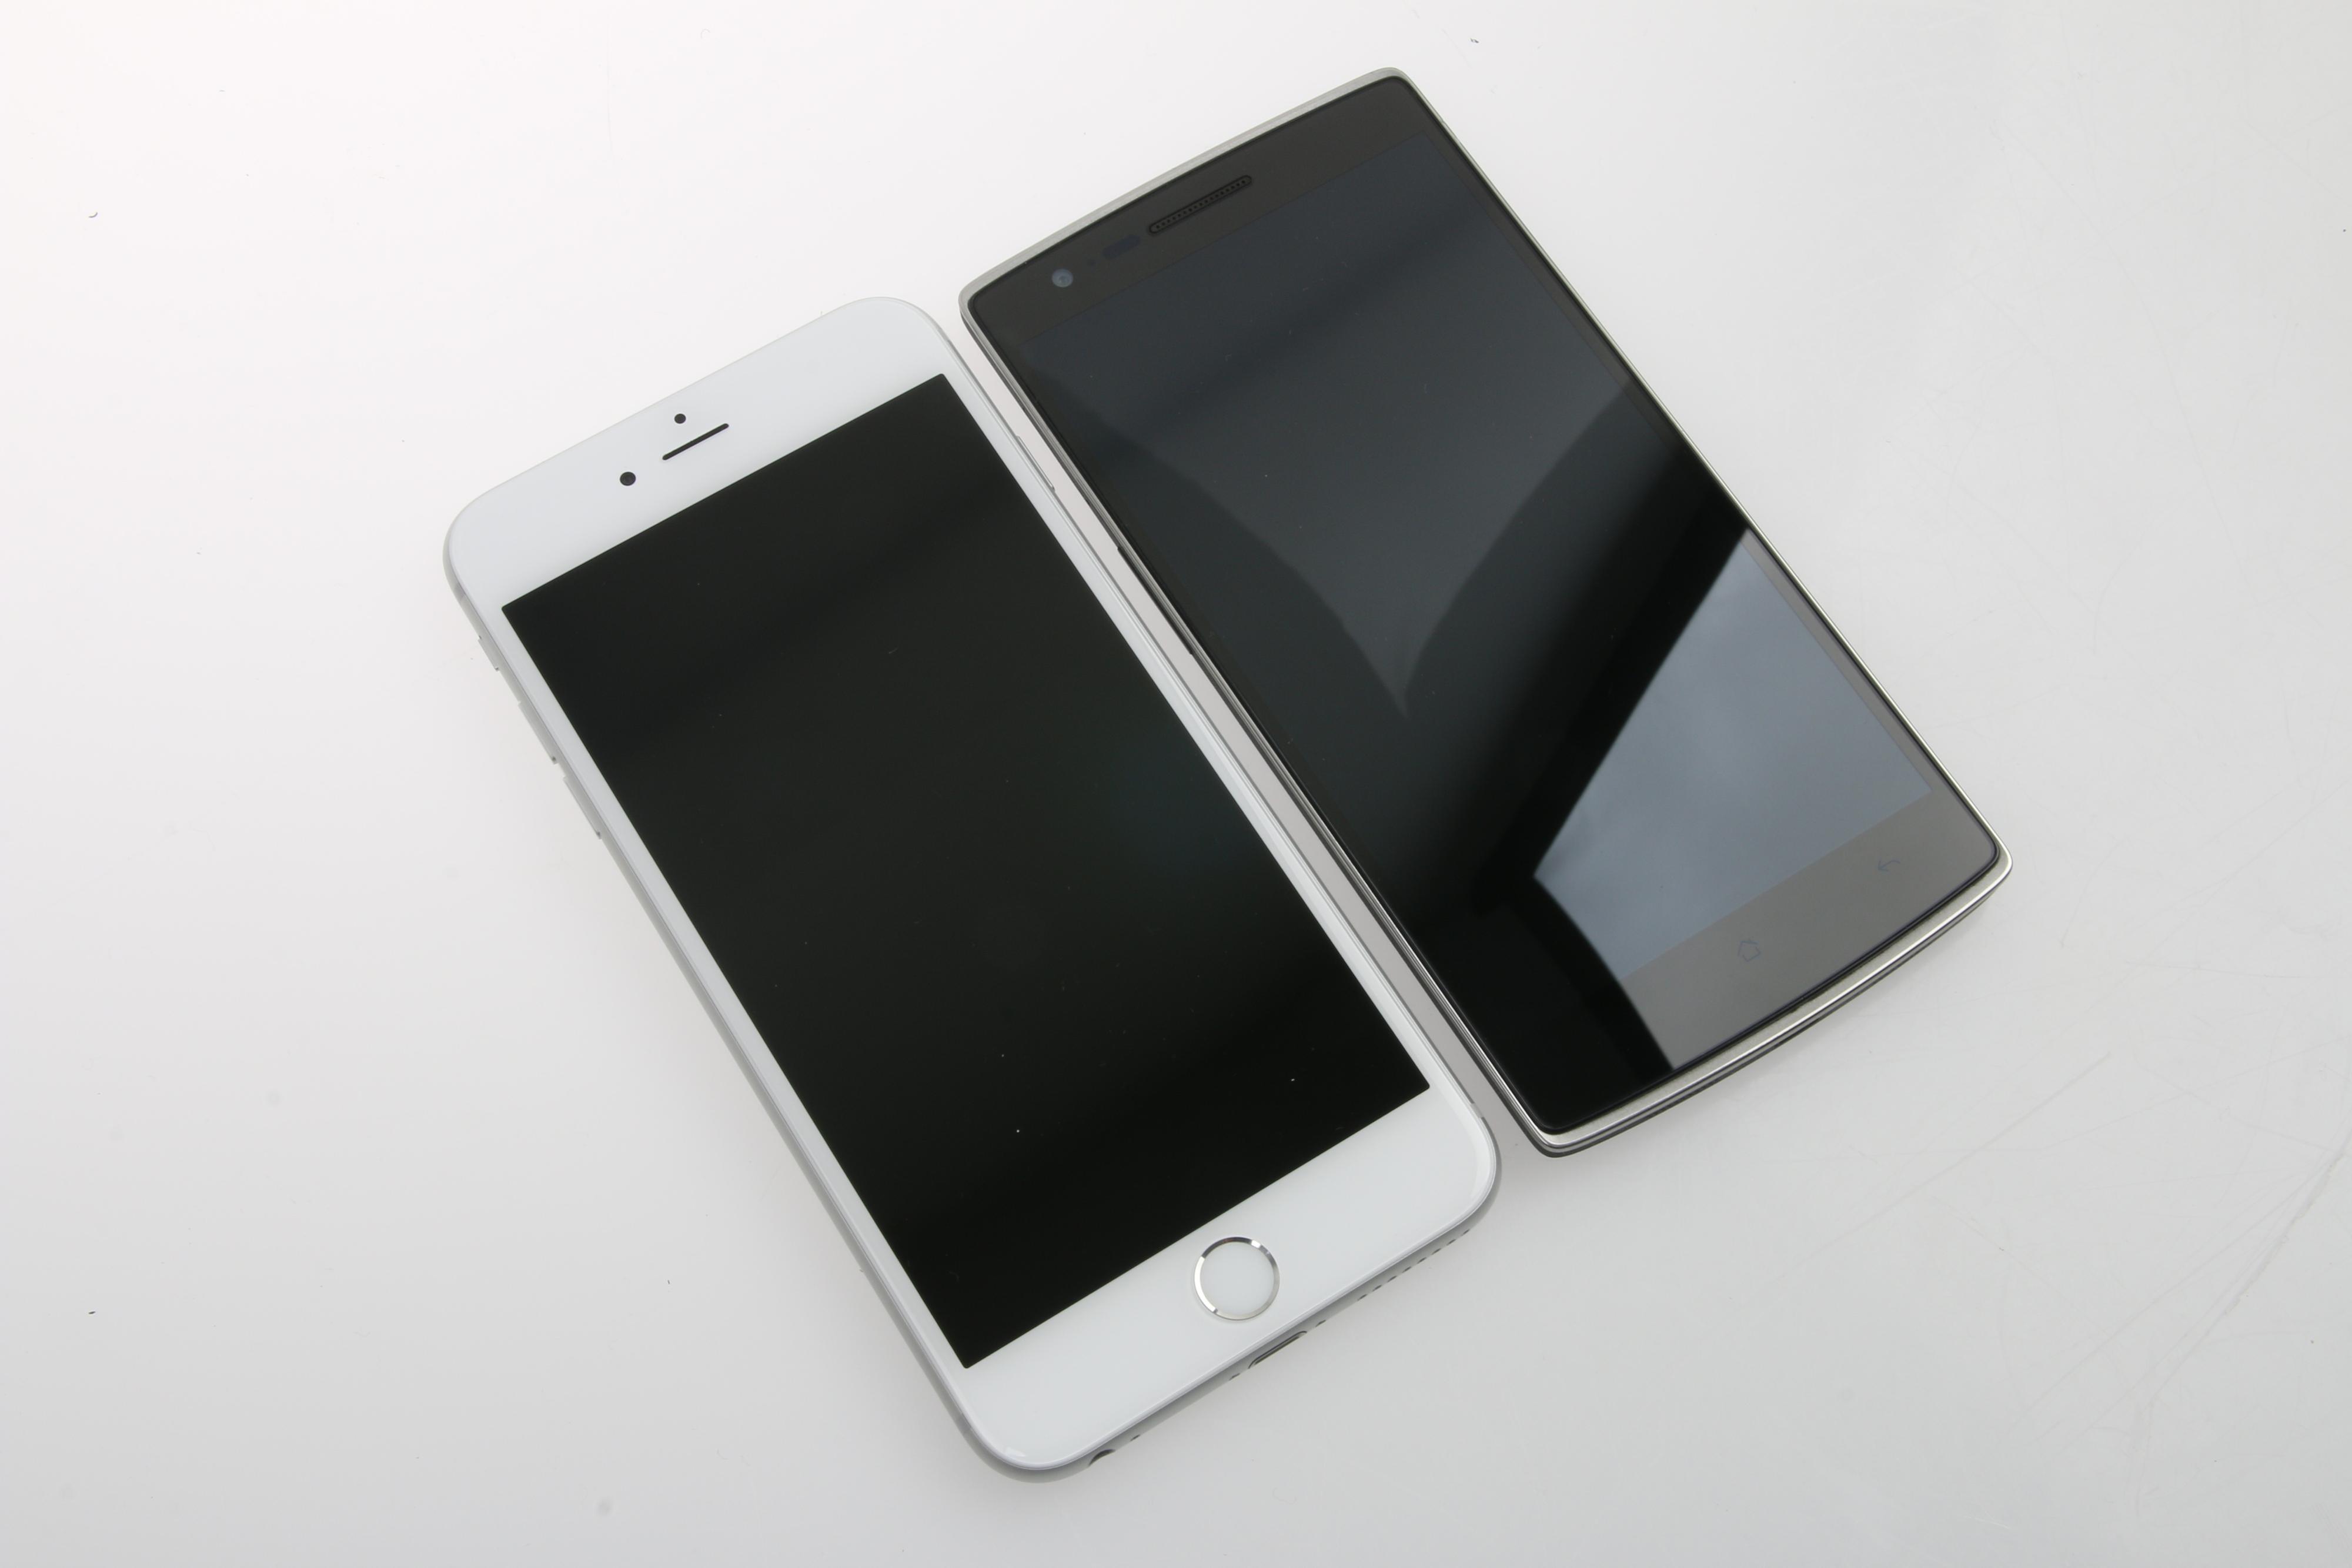 iPhone 6 Plus er noe større enn OnePlus One. 6 Plus måler 158,1 x 77,8 x 7,1 millimeter (høyde, bredde og tykkelse), mens OnePlus One på sin side er 152,9 x 75,9 x 8,9 mm. Ser vi på vekten veier iPhone 6 Plus 172 gram, mens vektnålen stopper ved 162 gram på OnePlus One.